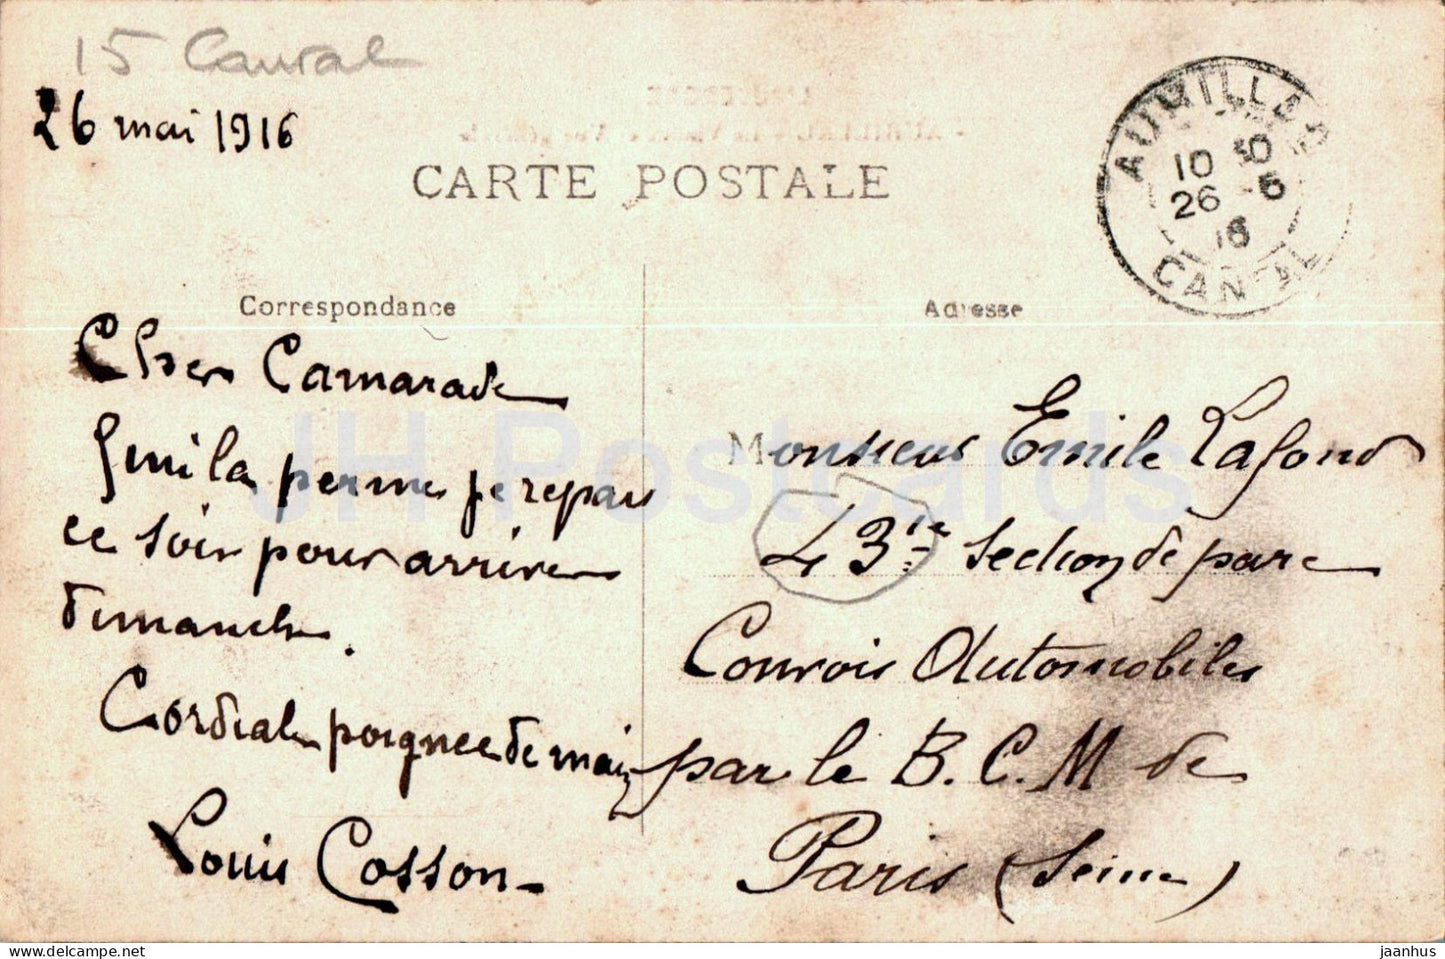 L'Auvergne - Aurillac - Le Viaduc et Vue generale - alte Postkarte - 1916 - Frankreich - gebraucht 